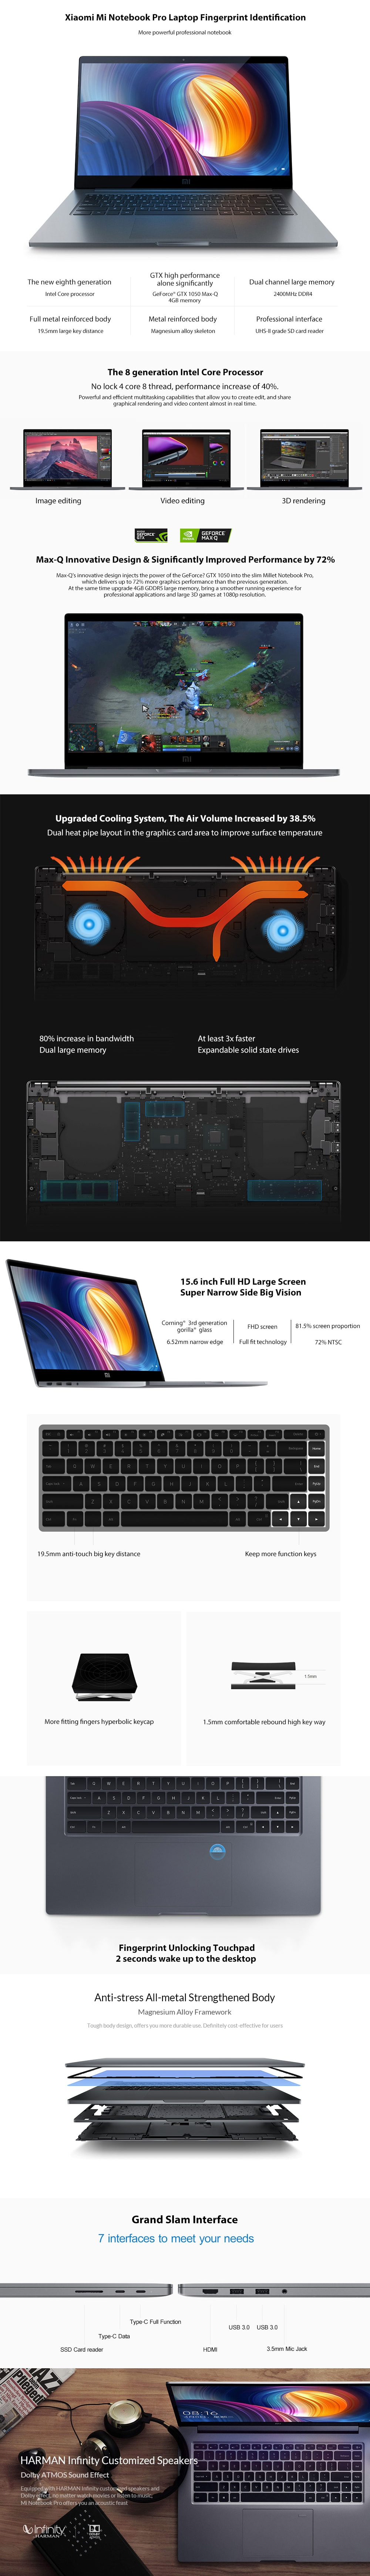 Xiaomi Mi Notebook Pro 15.6 inch i7-8550U 16GB DDR4 256GB SSD GTX1050Max-Q 4GB GDDR5 Laptop